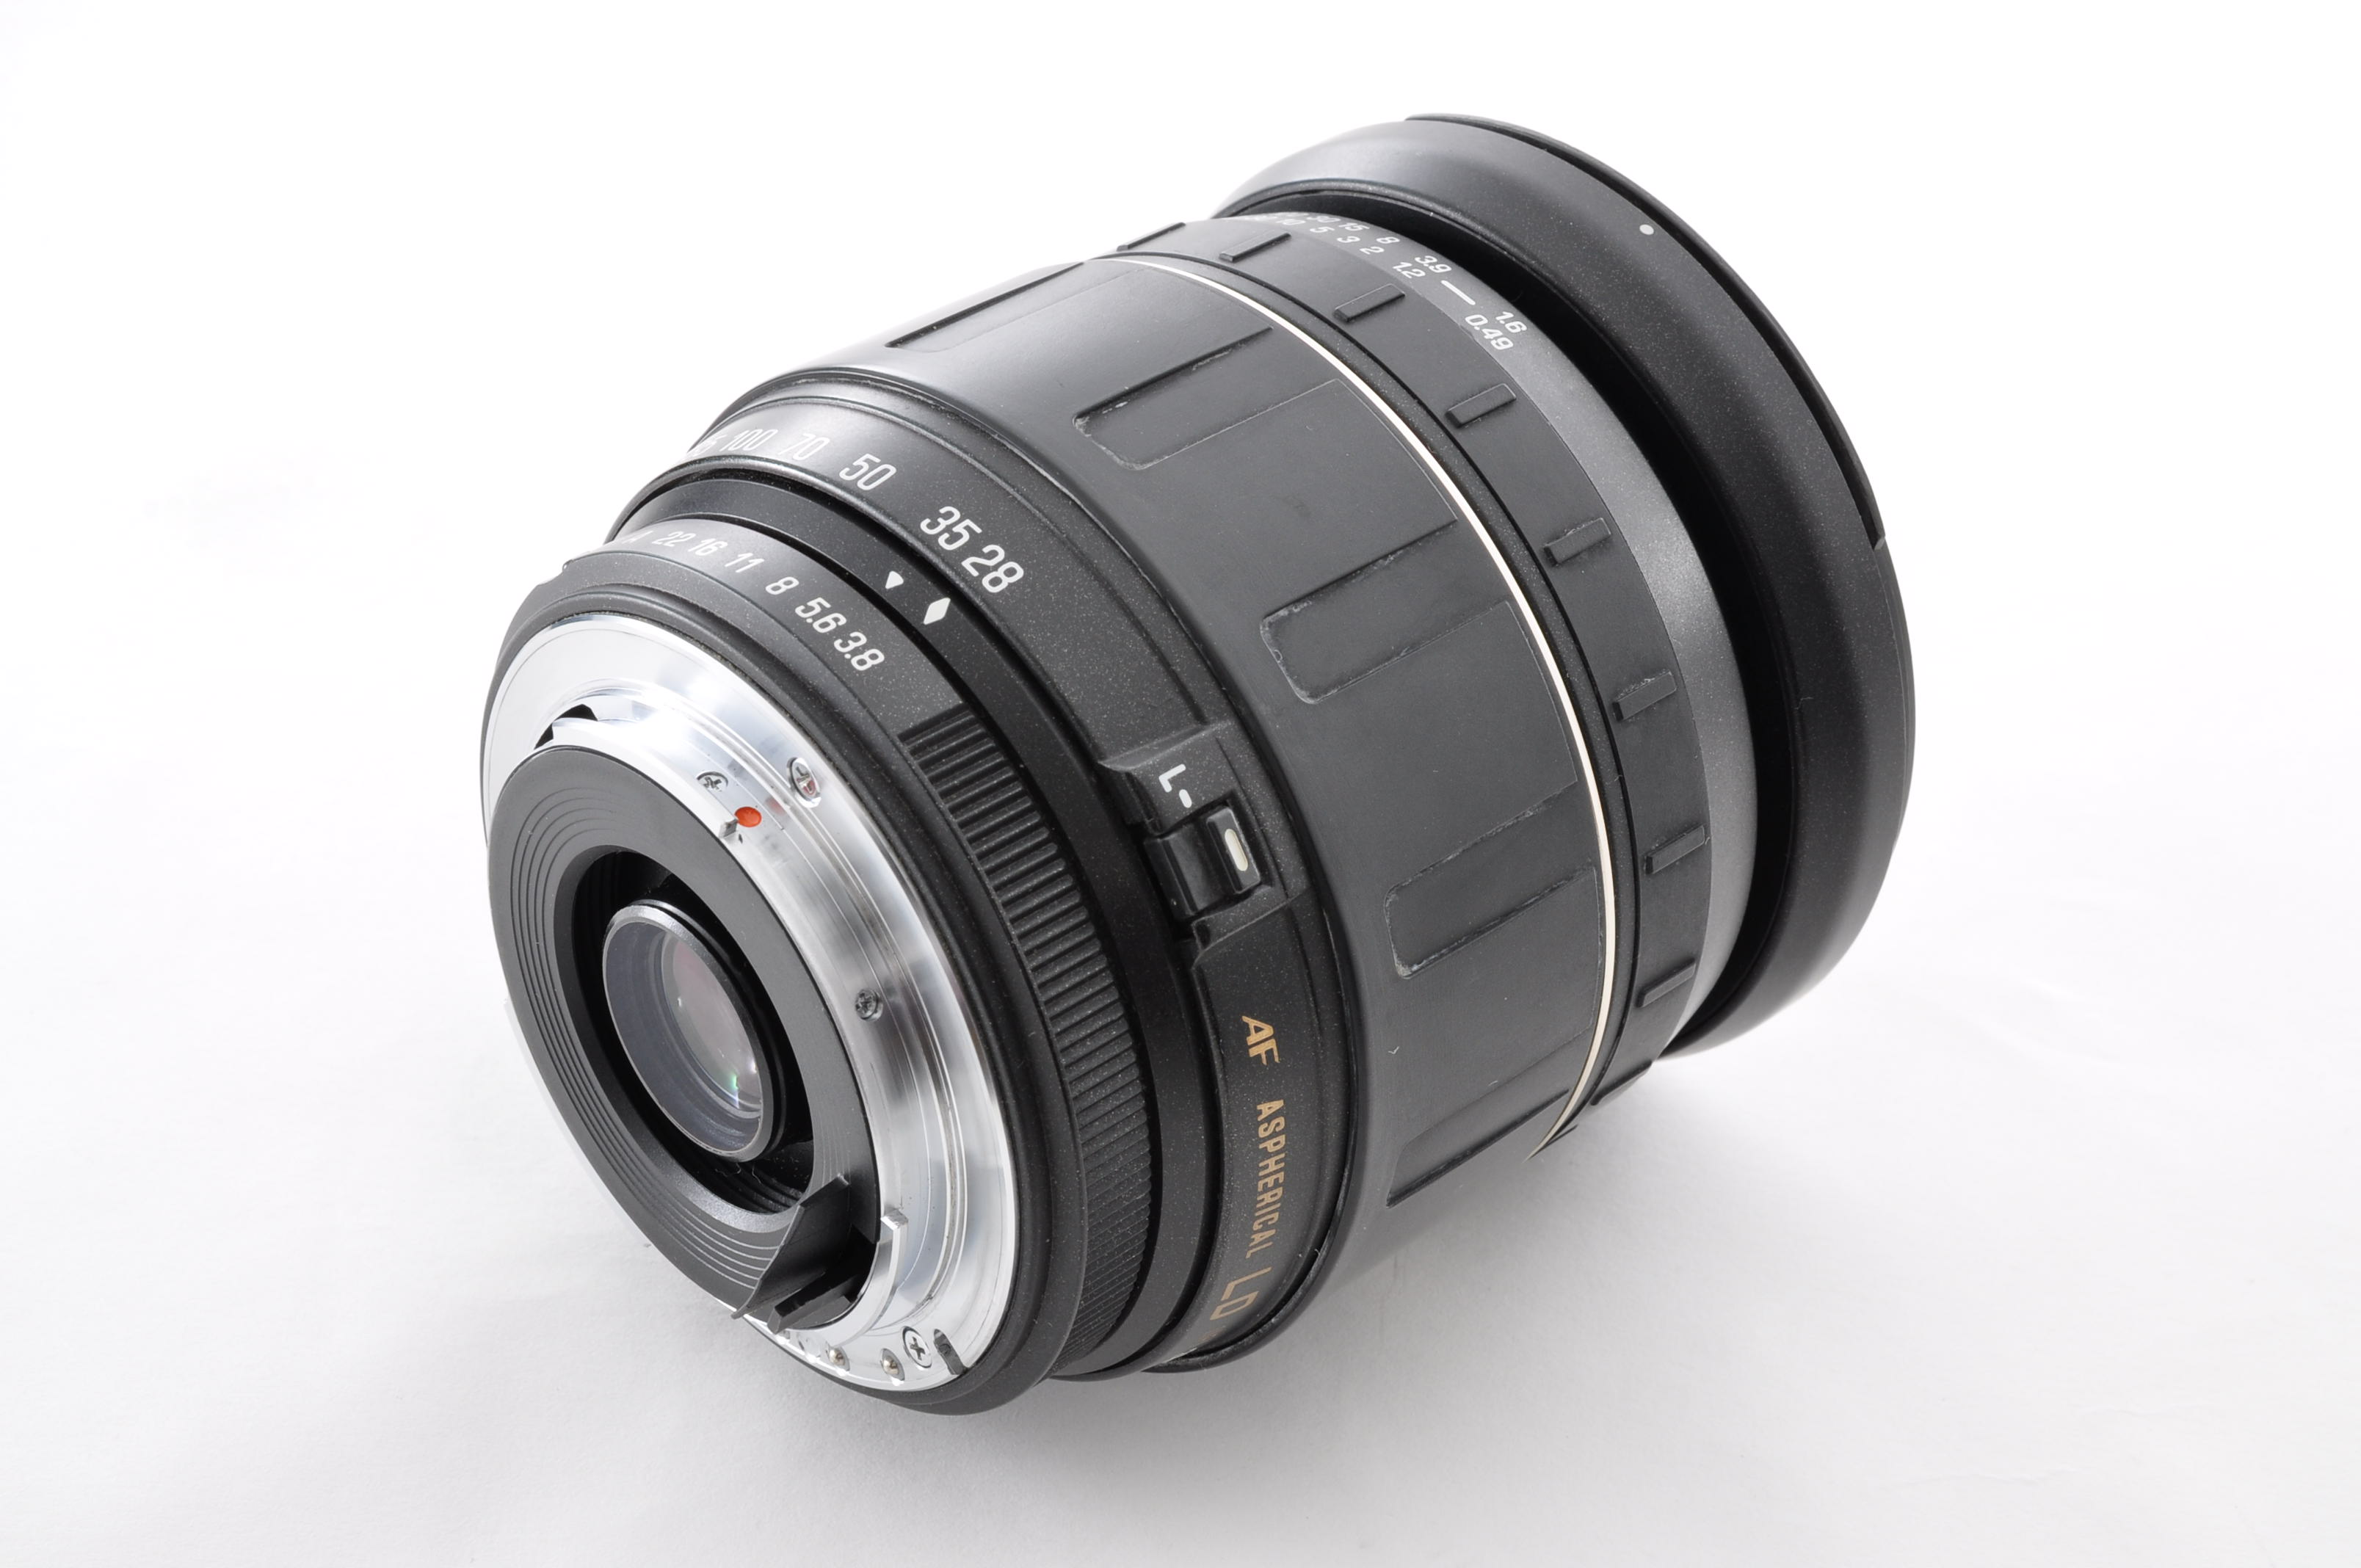 PENTAX MZ-7 35mm Film Camera [Near Mint] + Tamron 28-200mm F3.5-5.6 From Japan img16